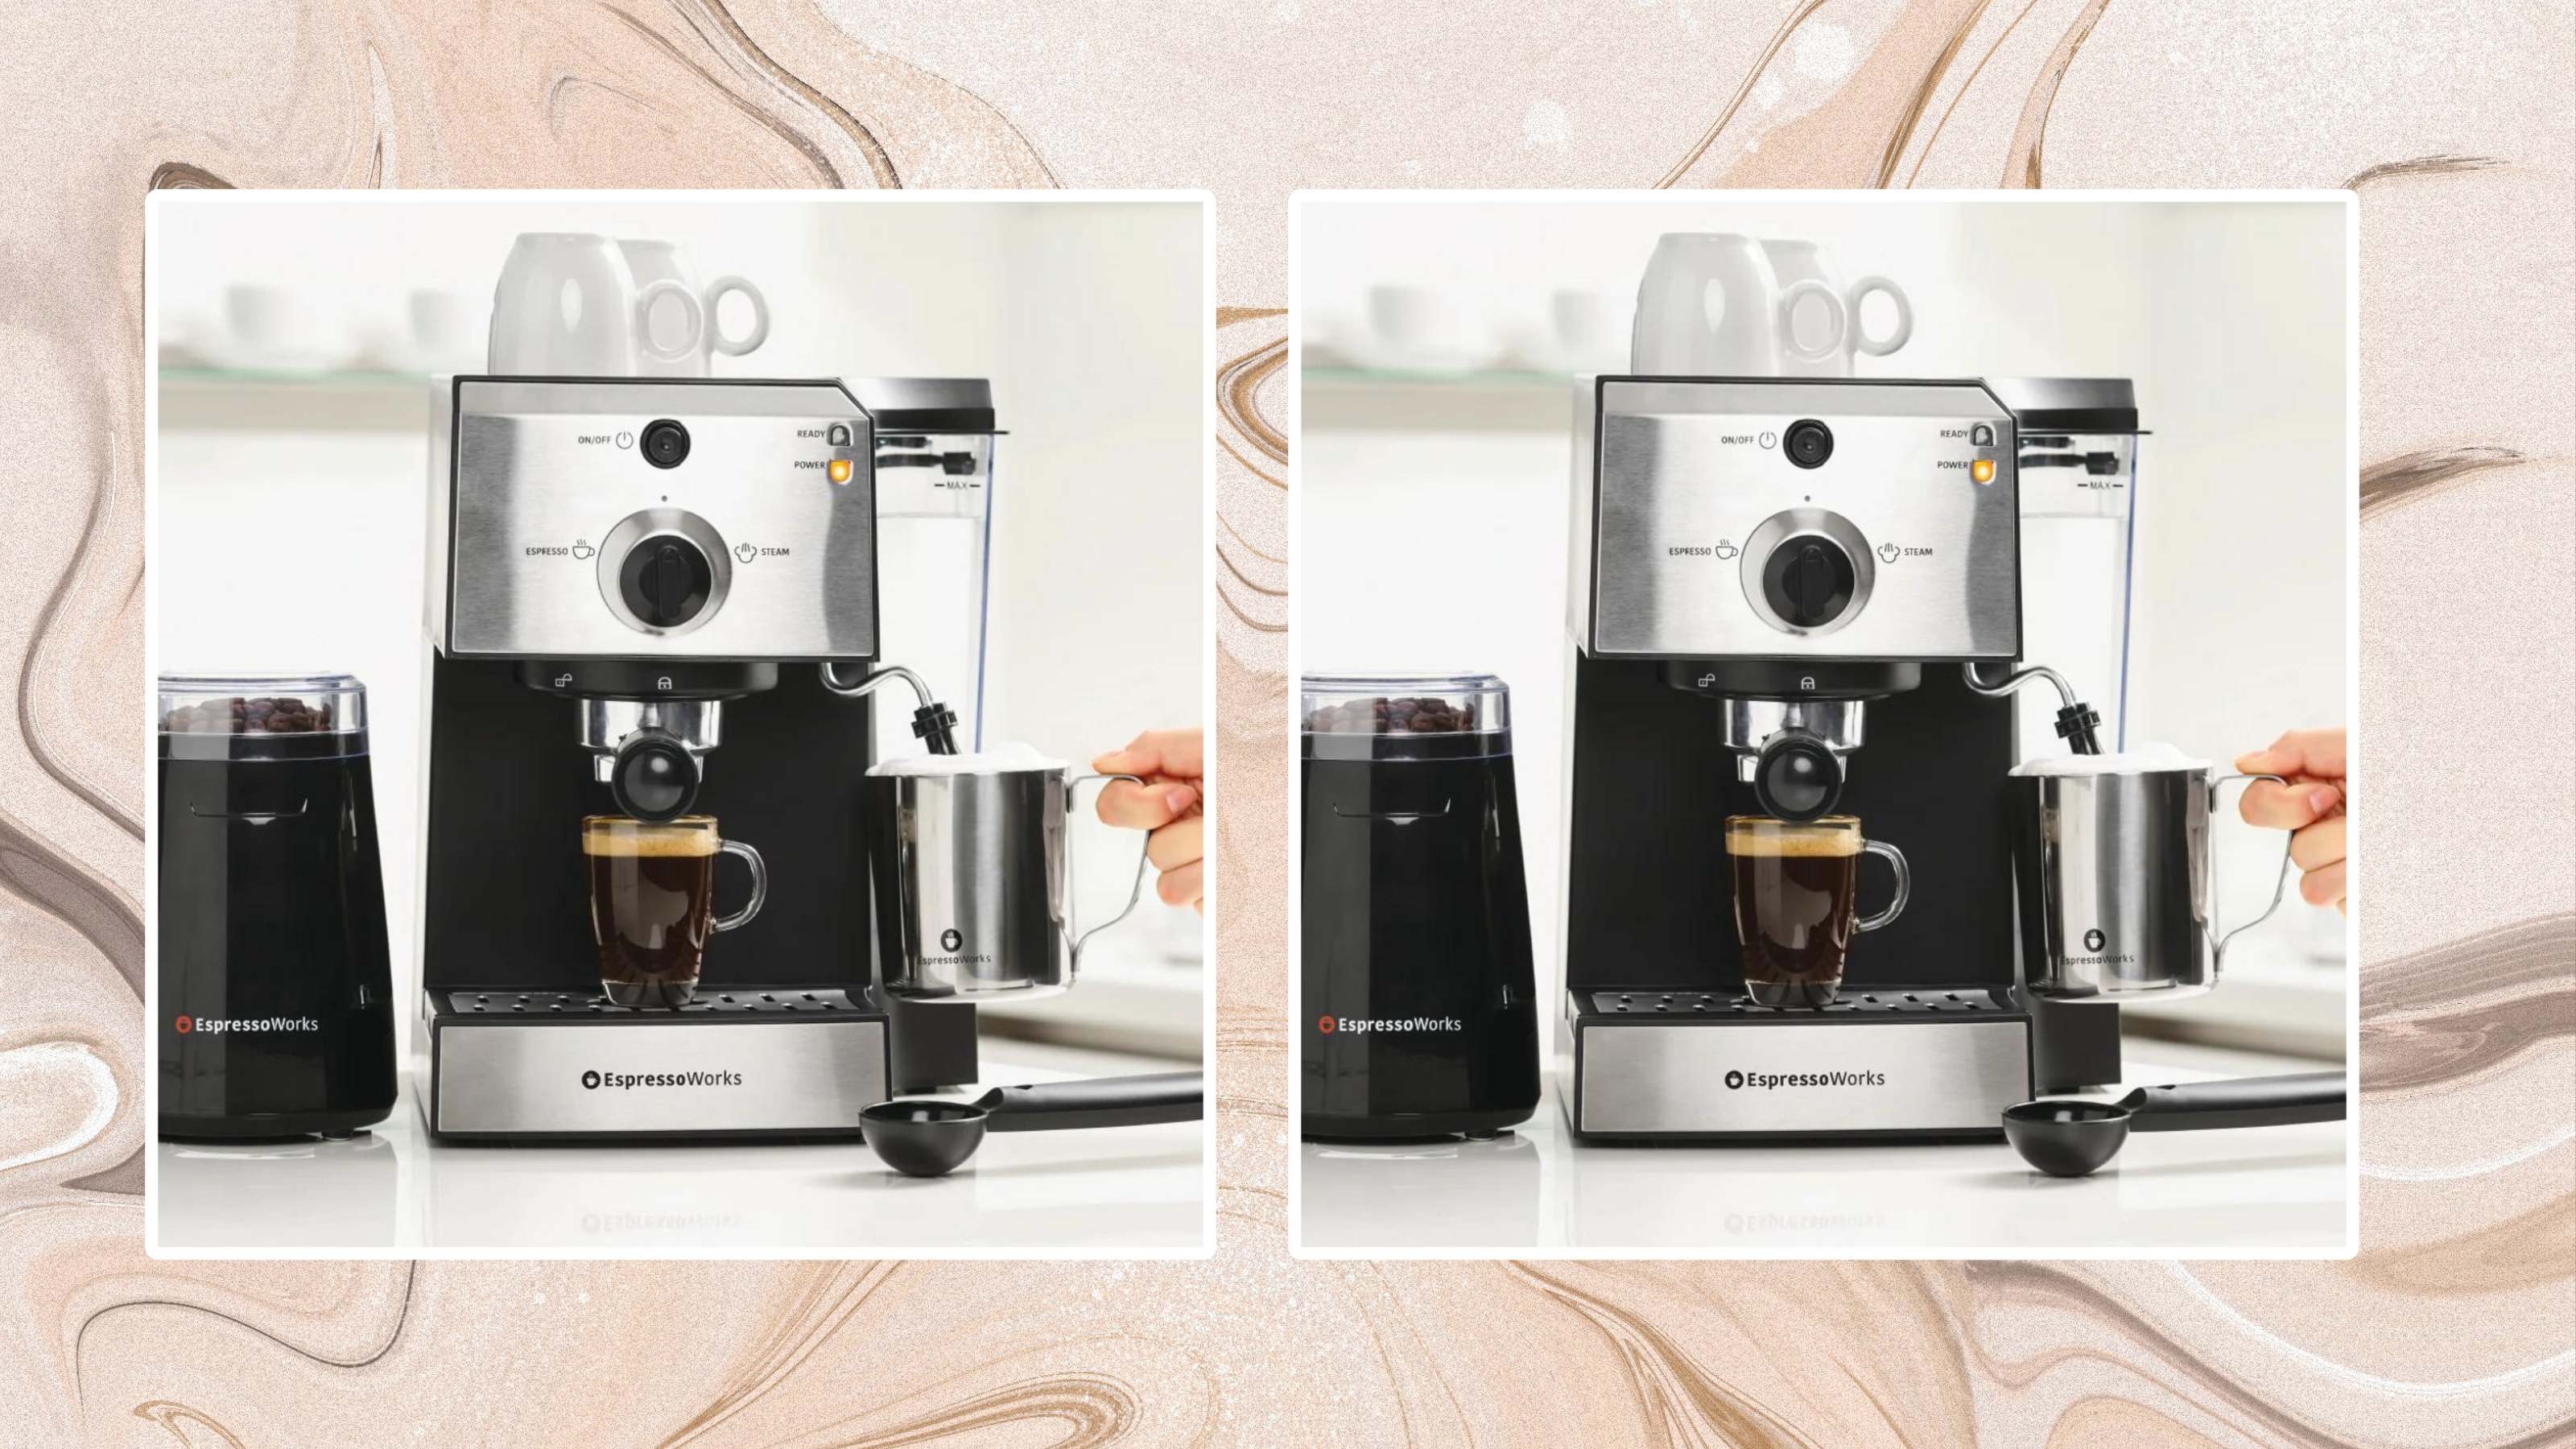 EspressoWorks Espresso Machine Latte & Cappuccino Maker- 10 PC All-in-One Espresso Maker with Milk Steamer (Incl: Coffee Bean Grinder 2 Cappuccino